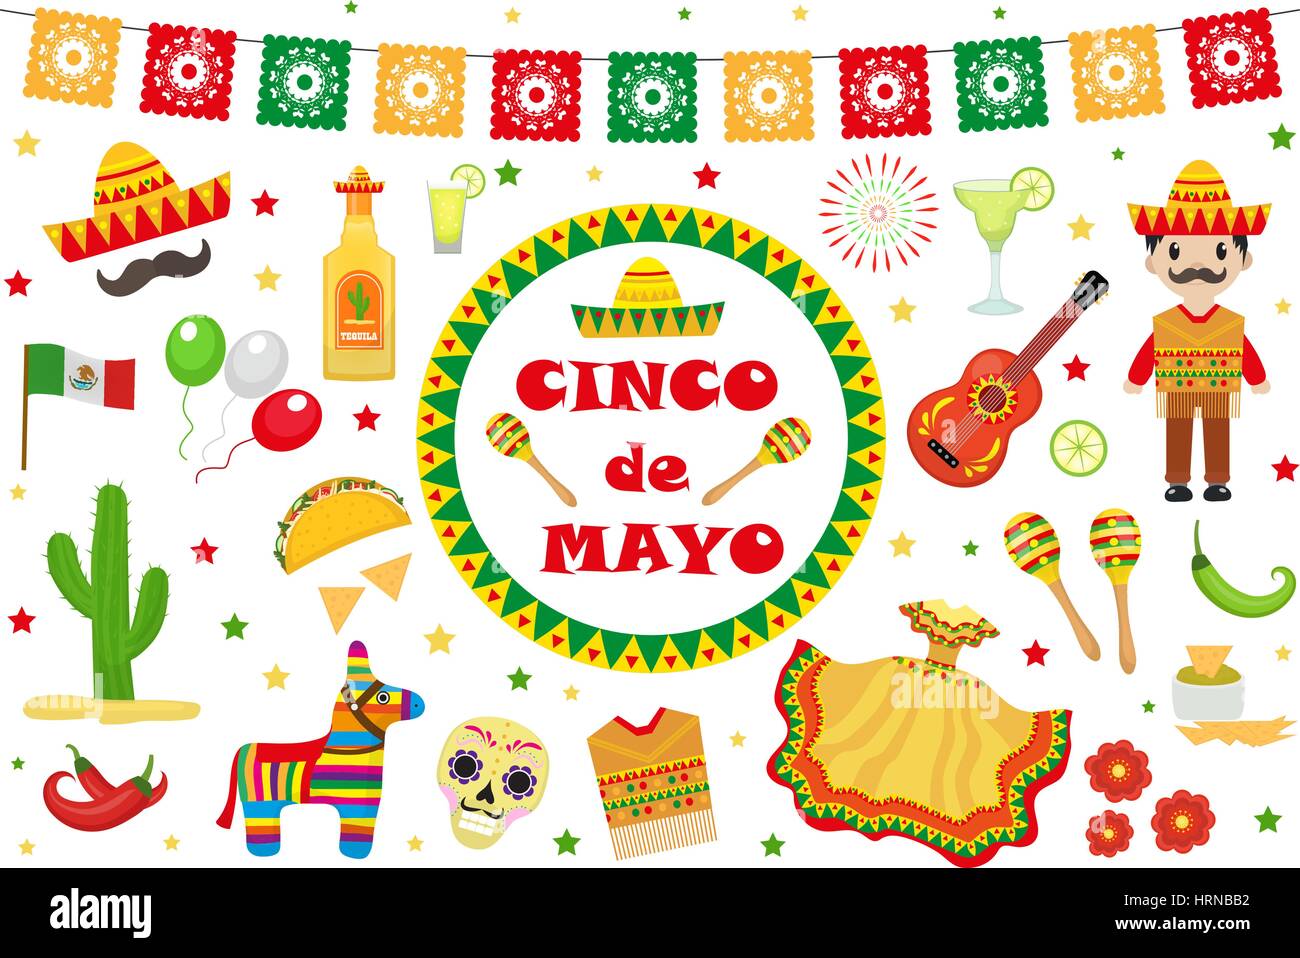 Cinco De Mayo-Feier in Mexiko, Icons Set, Design-Element, flachen Stil. Collection-Objekten für Cinco De Mayo-Parade mit Pinata, Essen, Sambrero, Tequila, Kaktus, kennzeichnen. Vektor-Illustration, ClipArt Stock Vektor